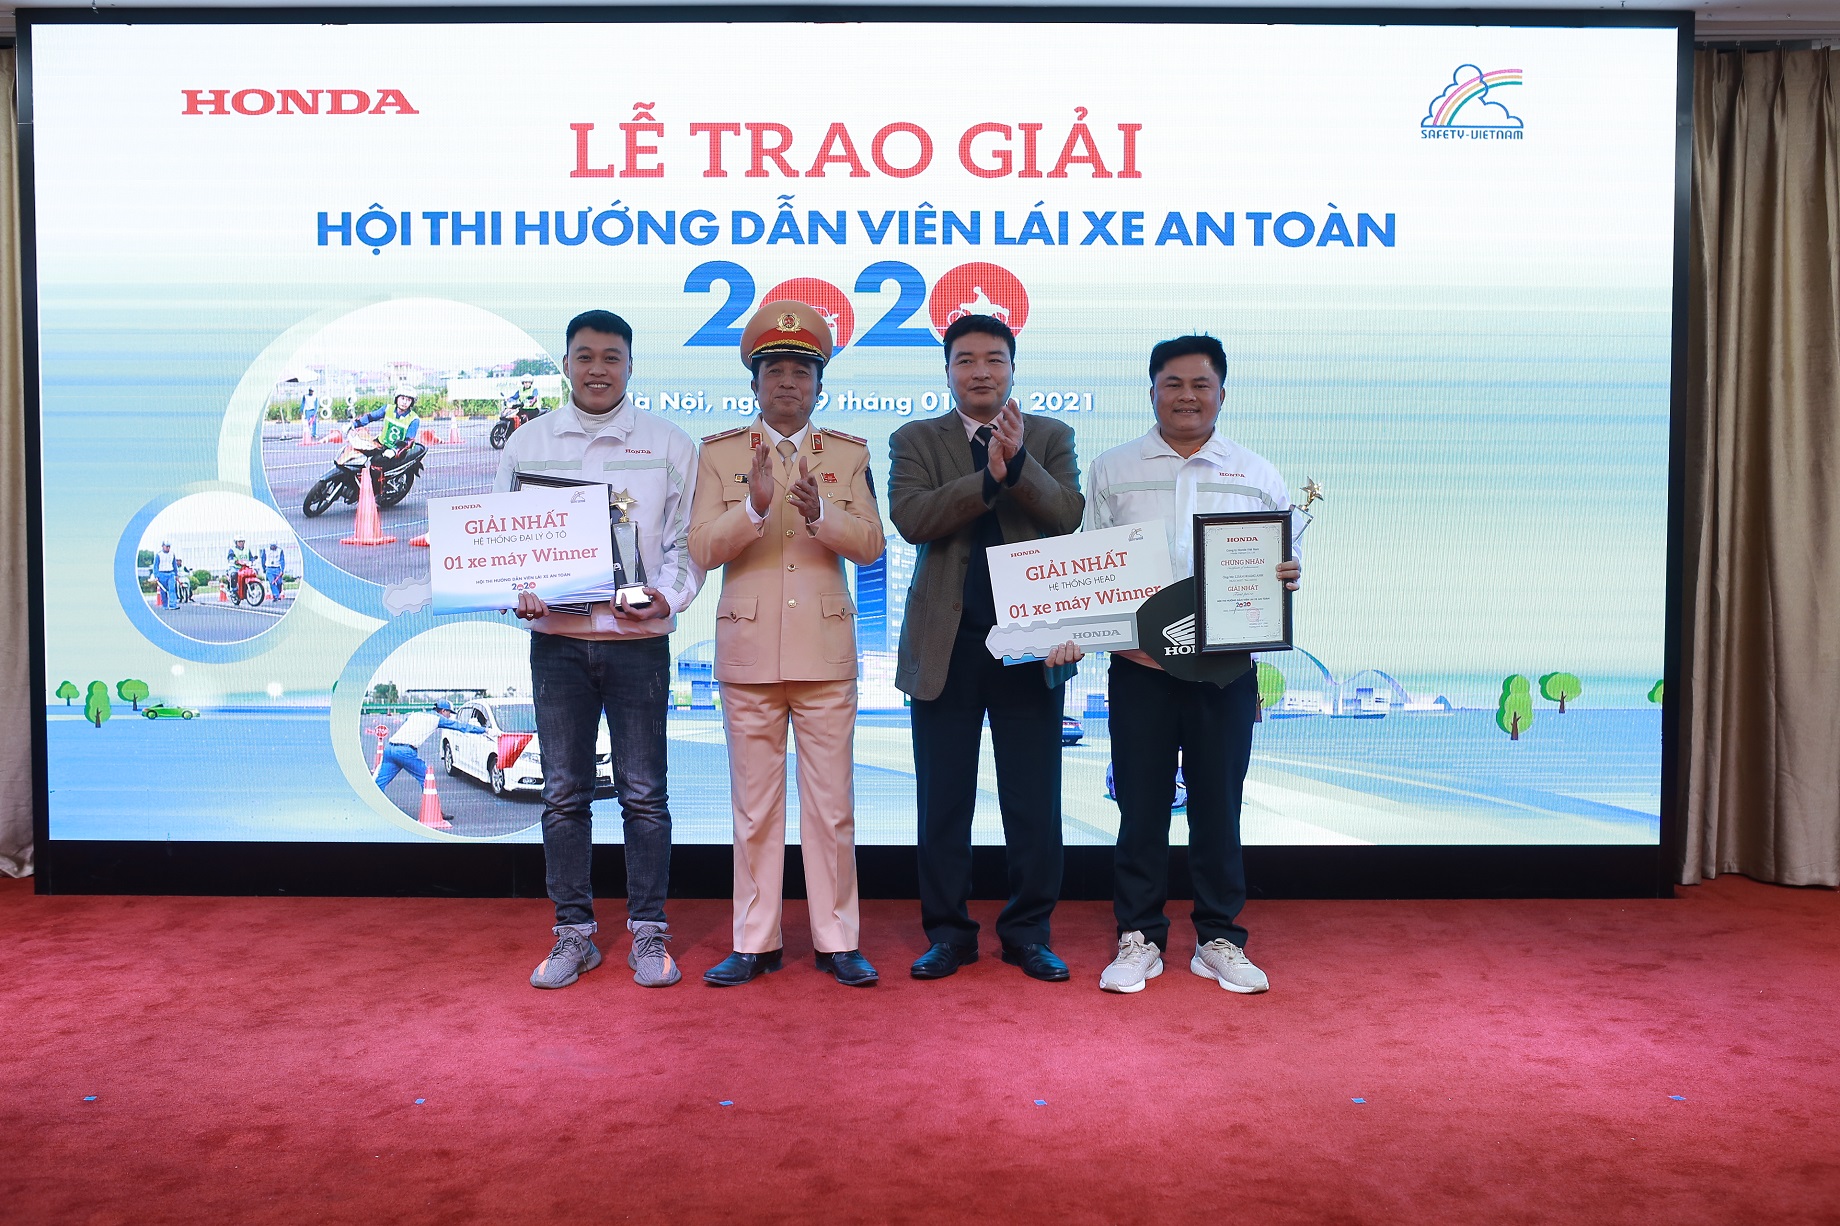 Sôi động cuộc thi “Hướng dẫn viên Lái xe an toàn năm 2020” lai-xe-an-toan-1.JPG